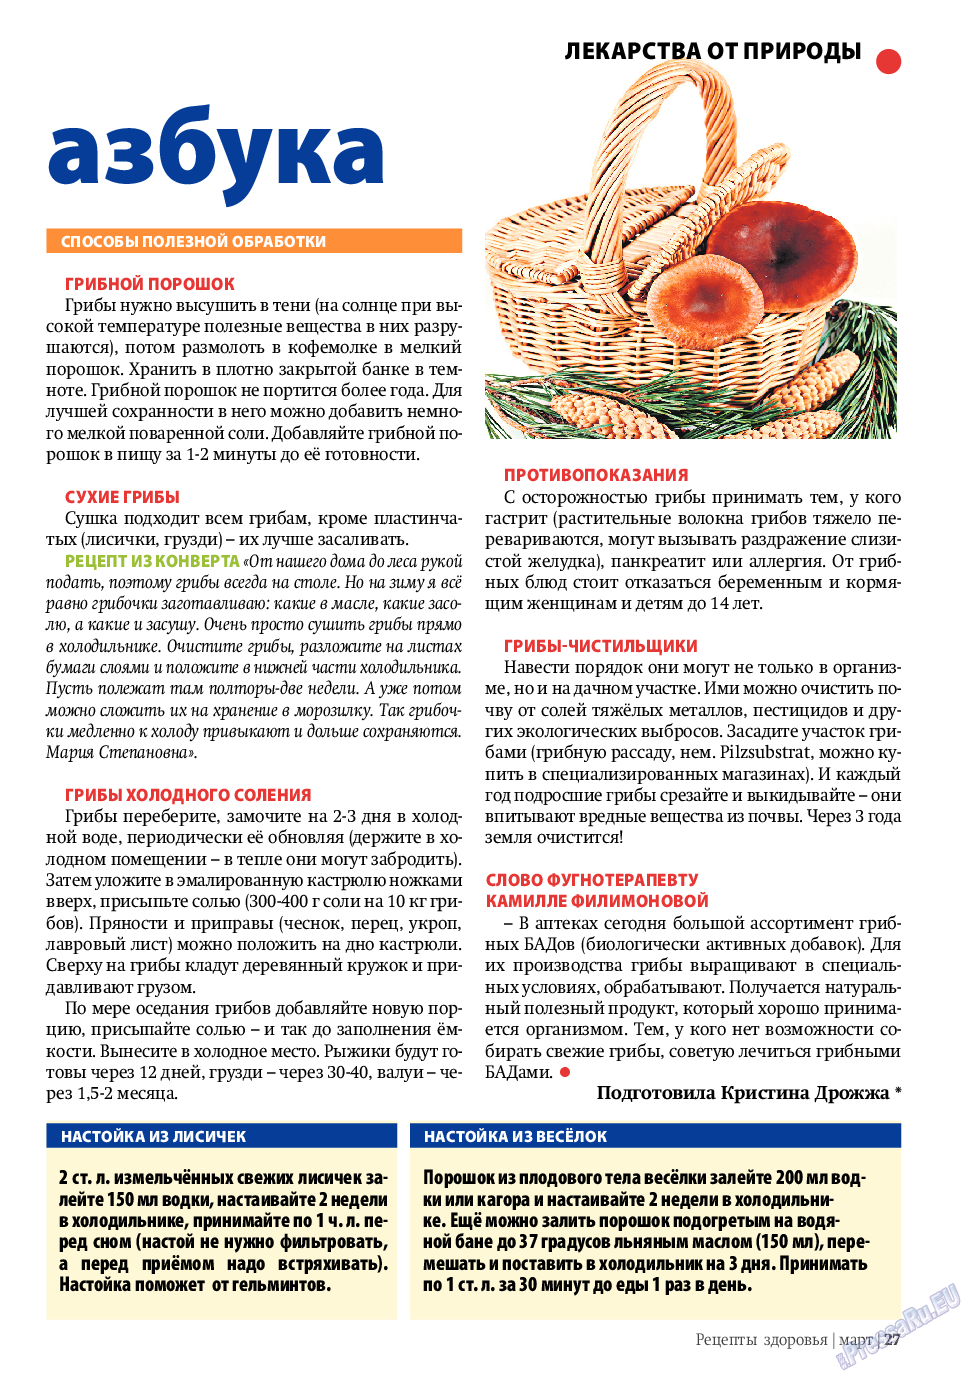 Рецепты здоровья, журнал. 2010 №3 стр.27